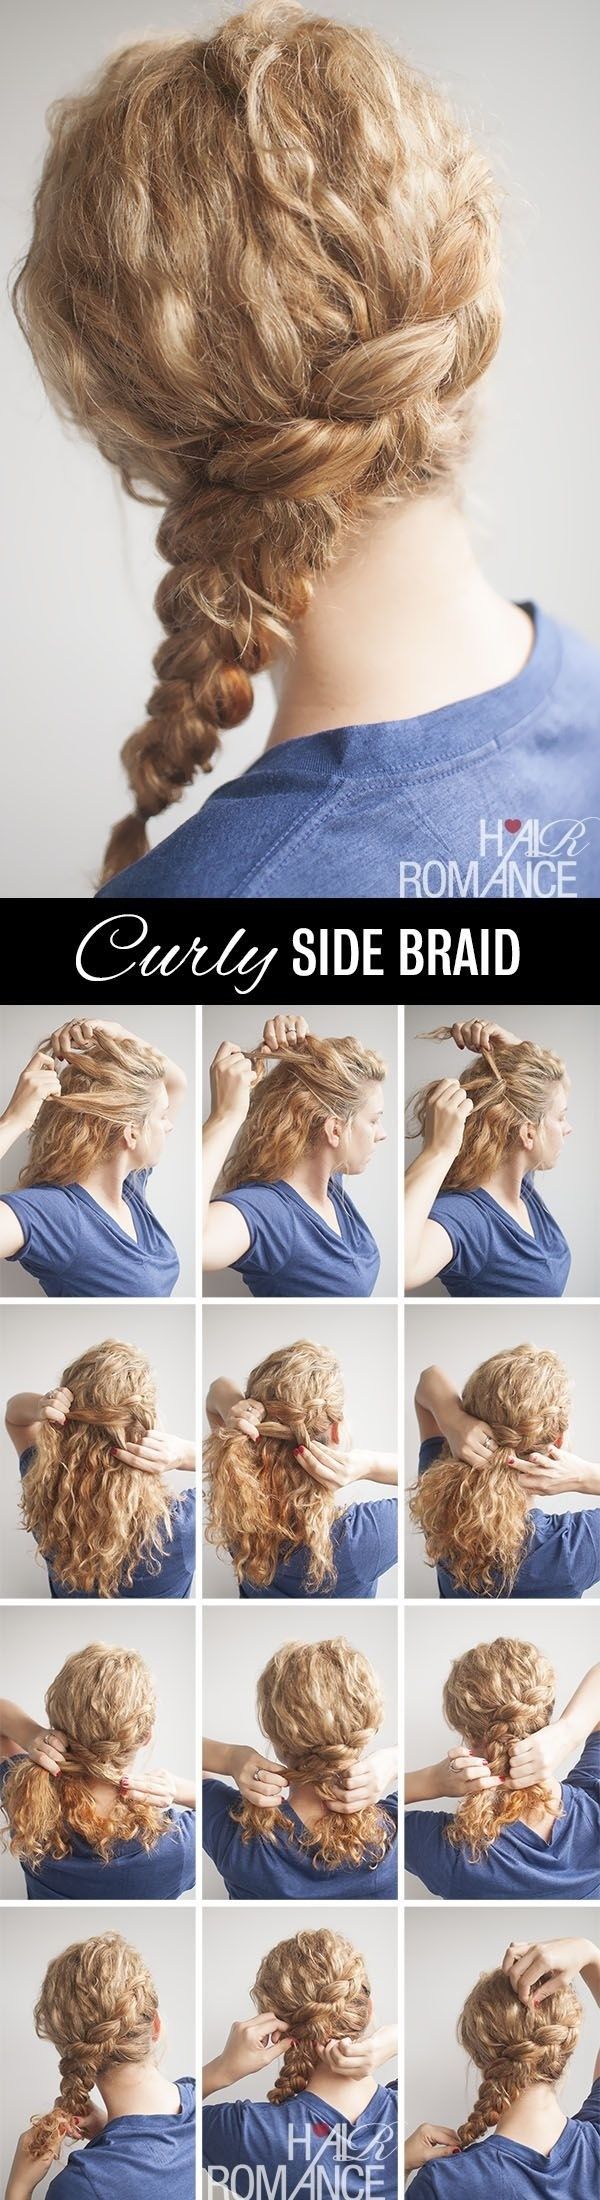 10-Trendy-Side-Braid-Hairstyles-for-Long-Hair.jpg